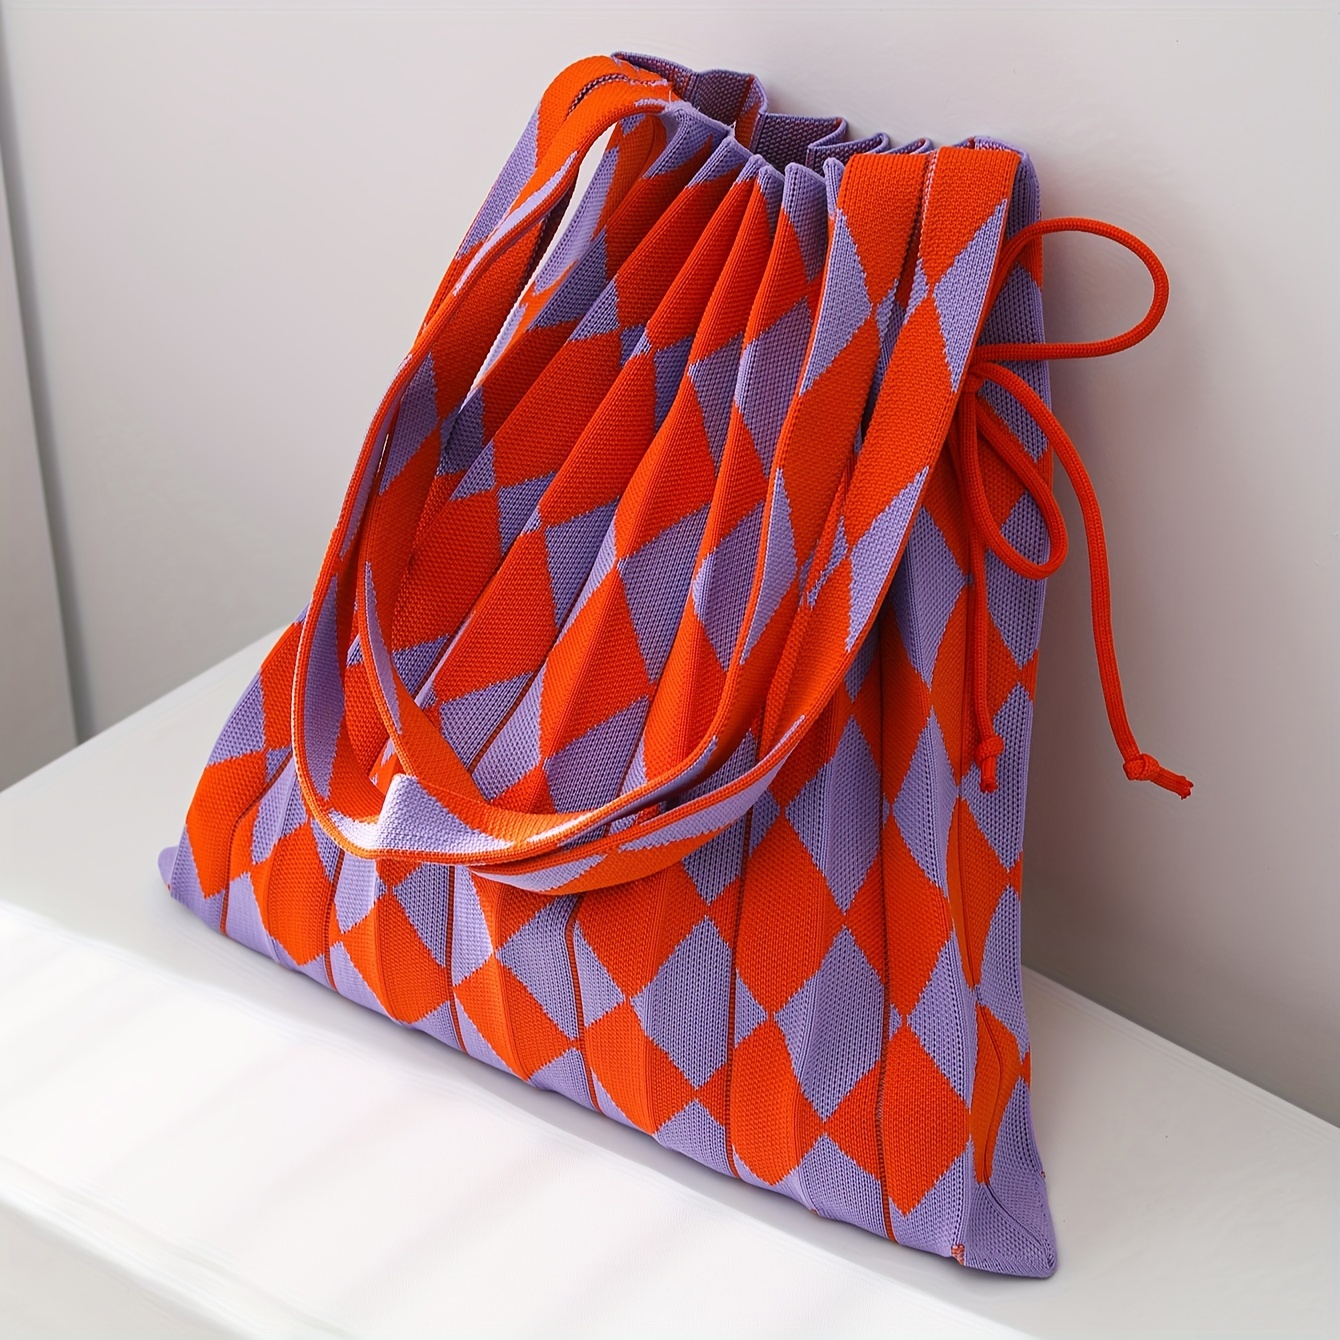 Cute Cartoon Flower Knitted Bag, Aesthetic Y2k Shoulder Bag